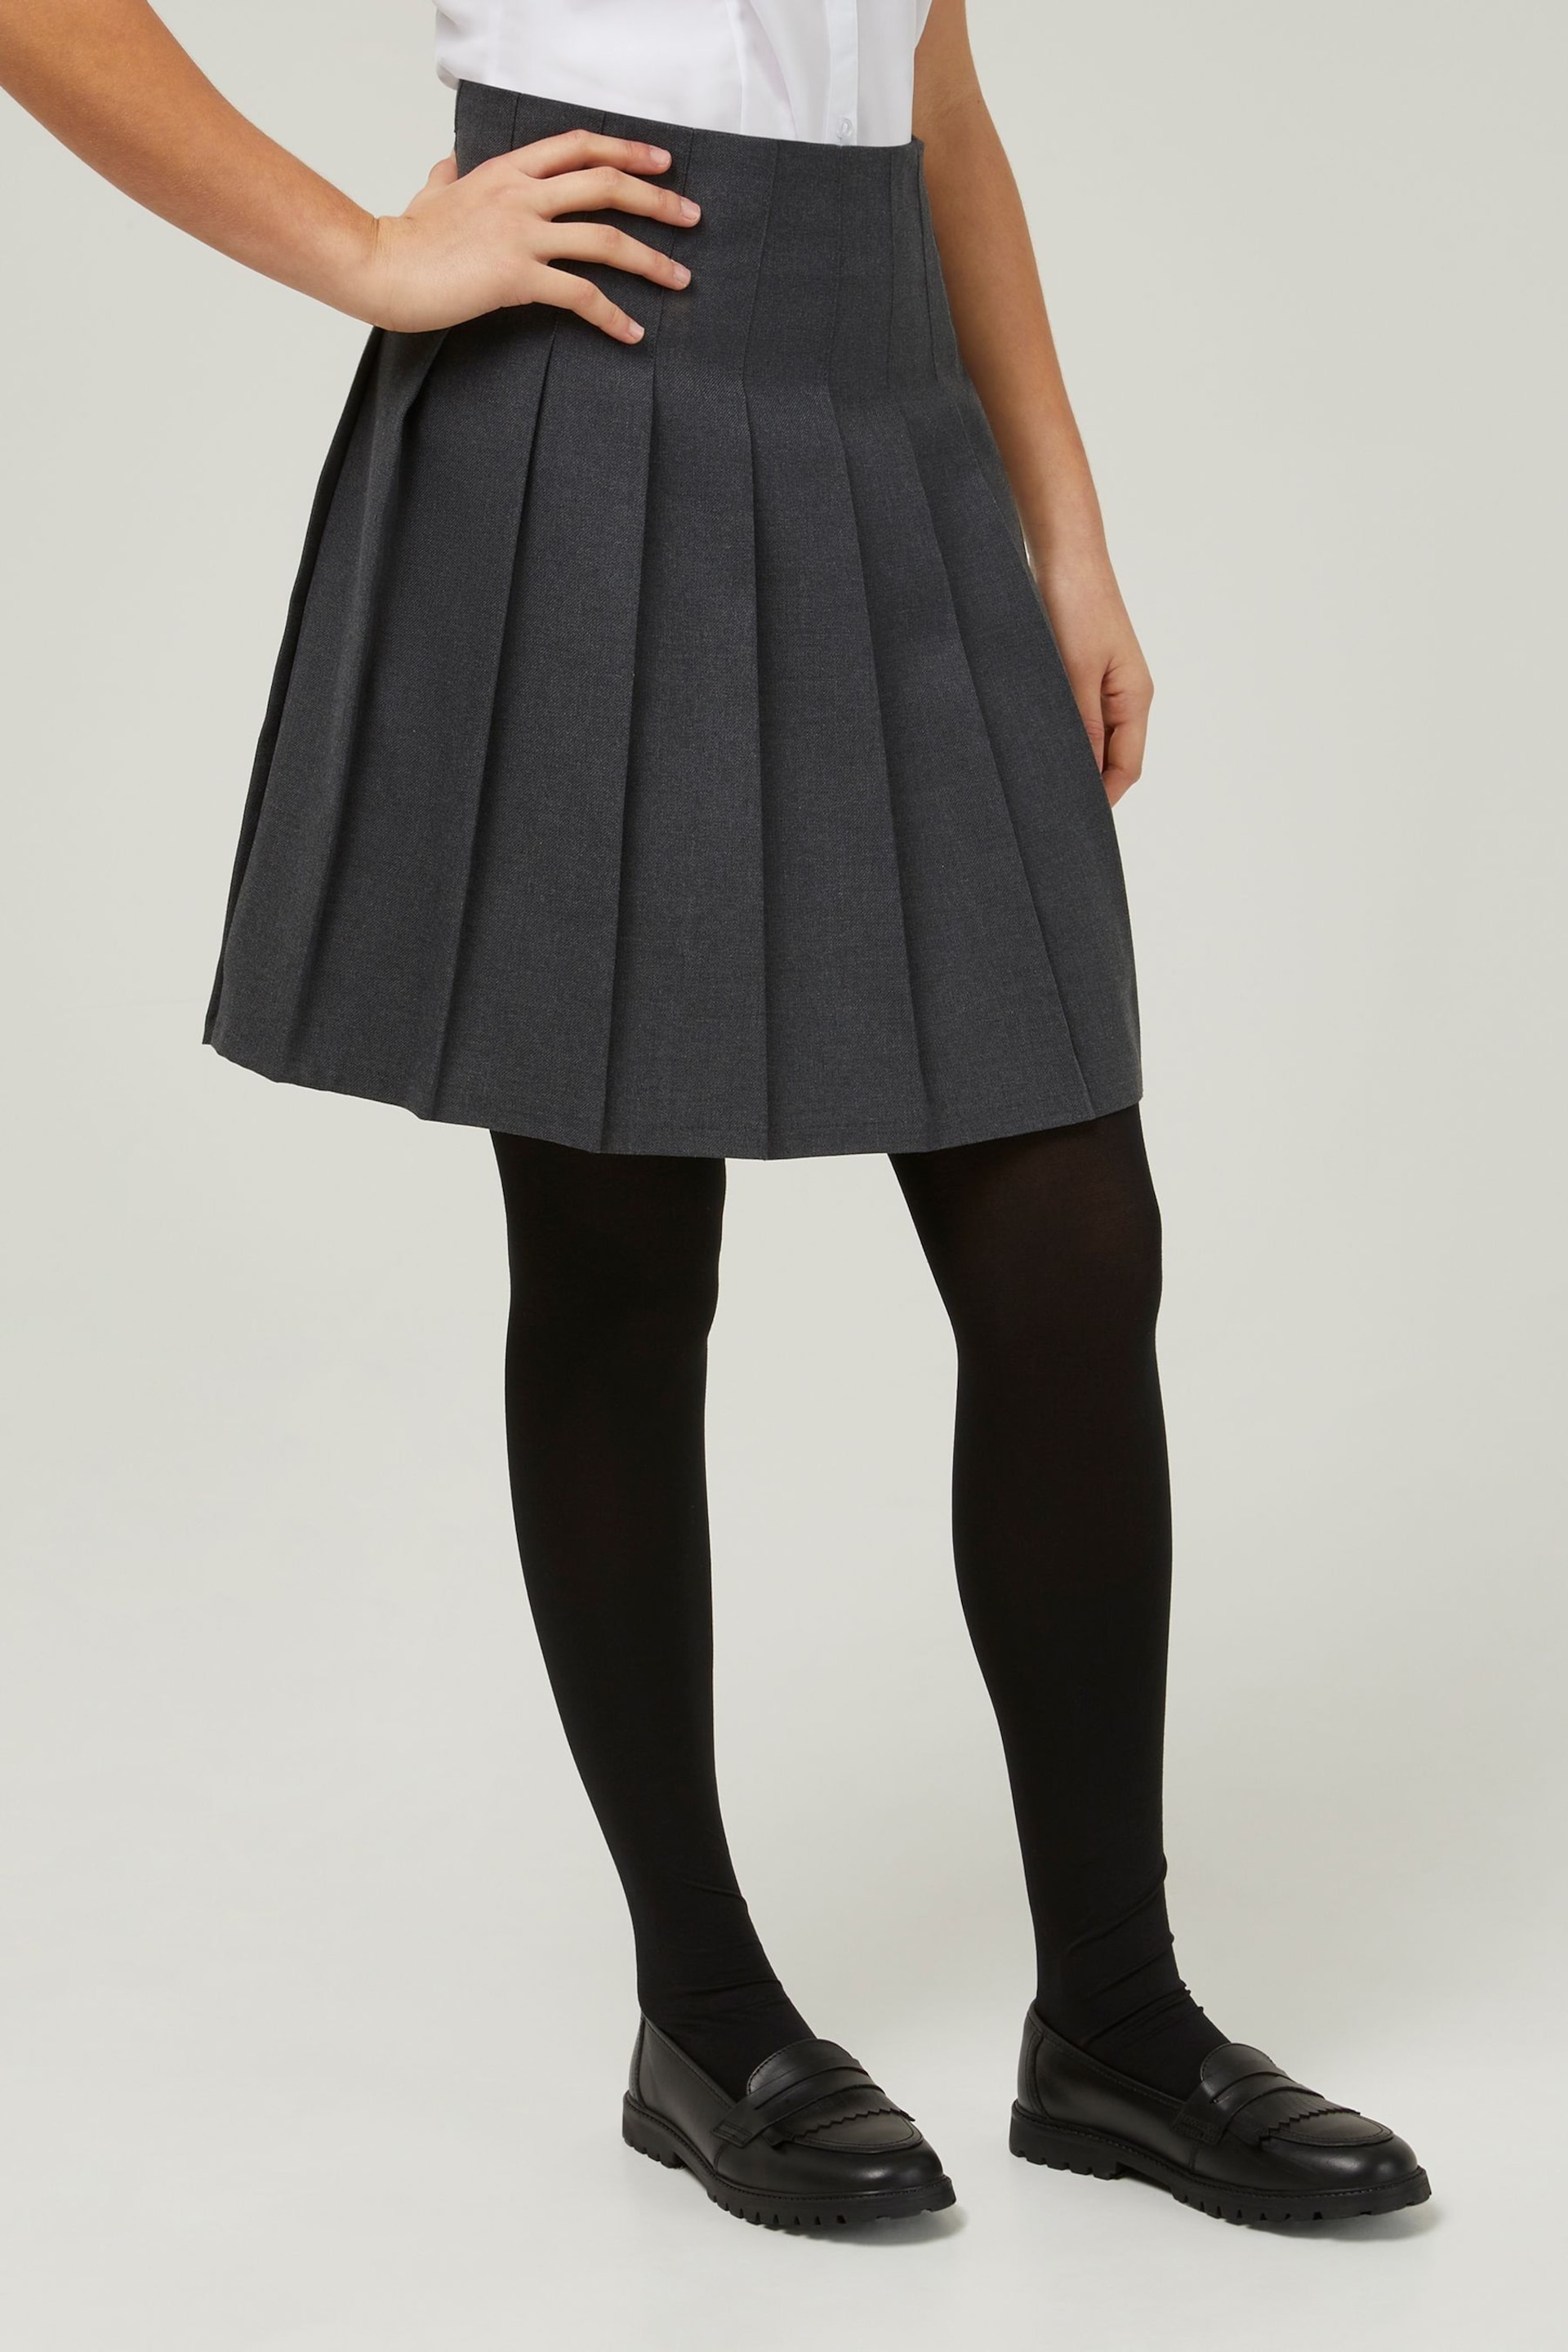 Trutex Grey 16" Stitch Down Permament Pleats School Skirt (10-16 Yrs) - Image 1 of 5